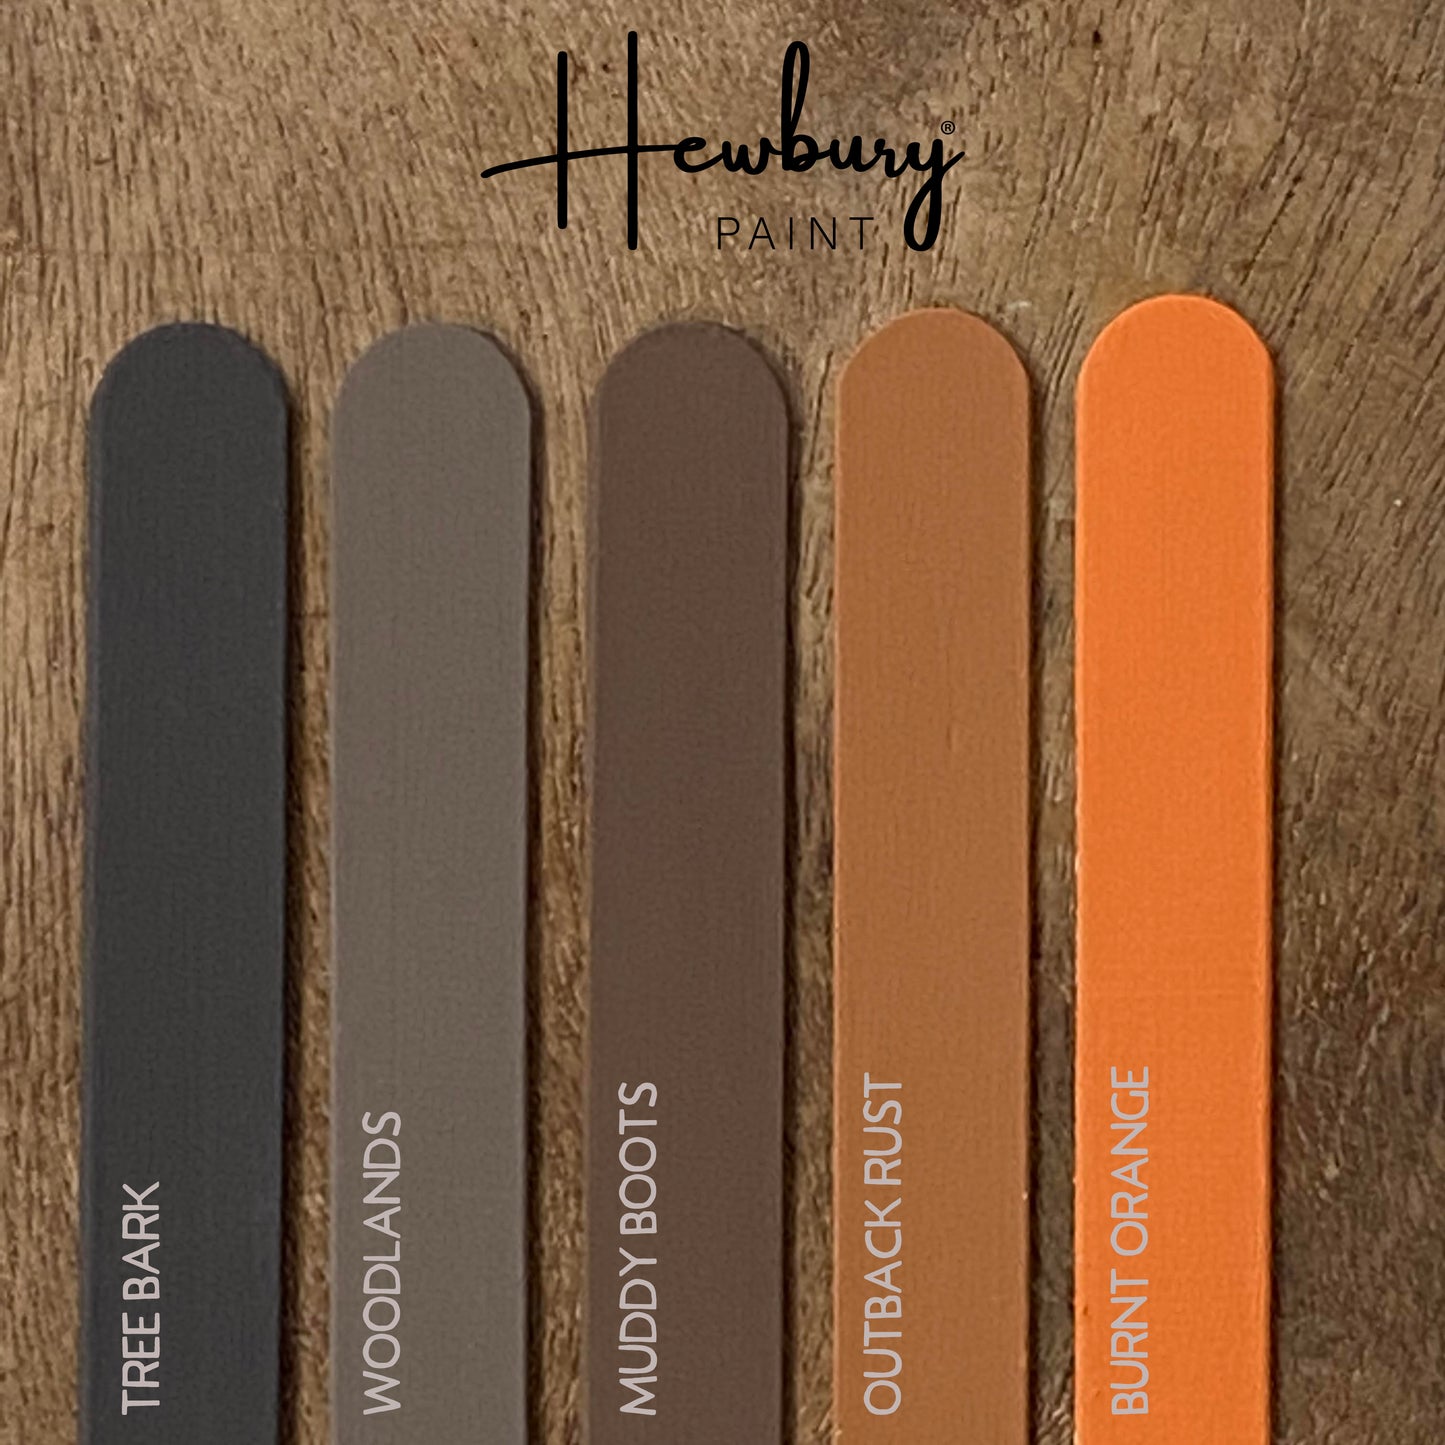 Hewbury Paint® -  MUDDY BOOTS